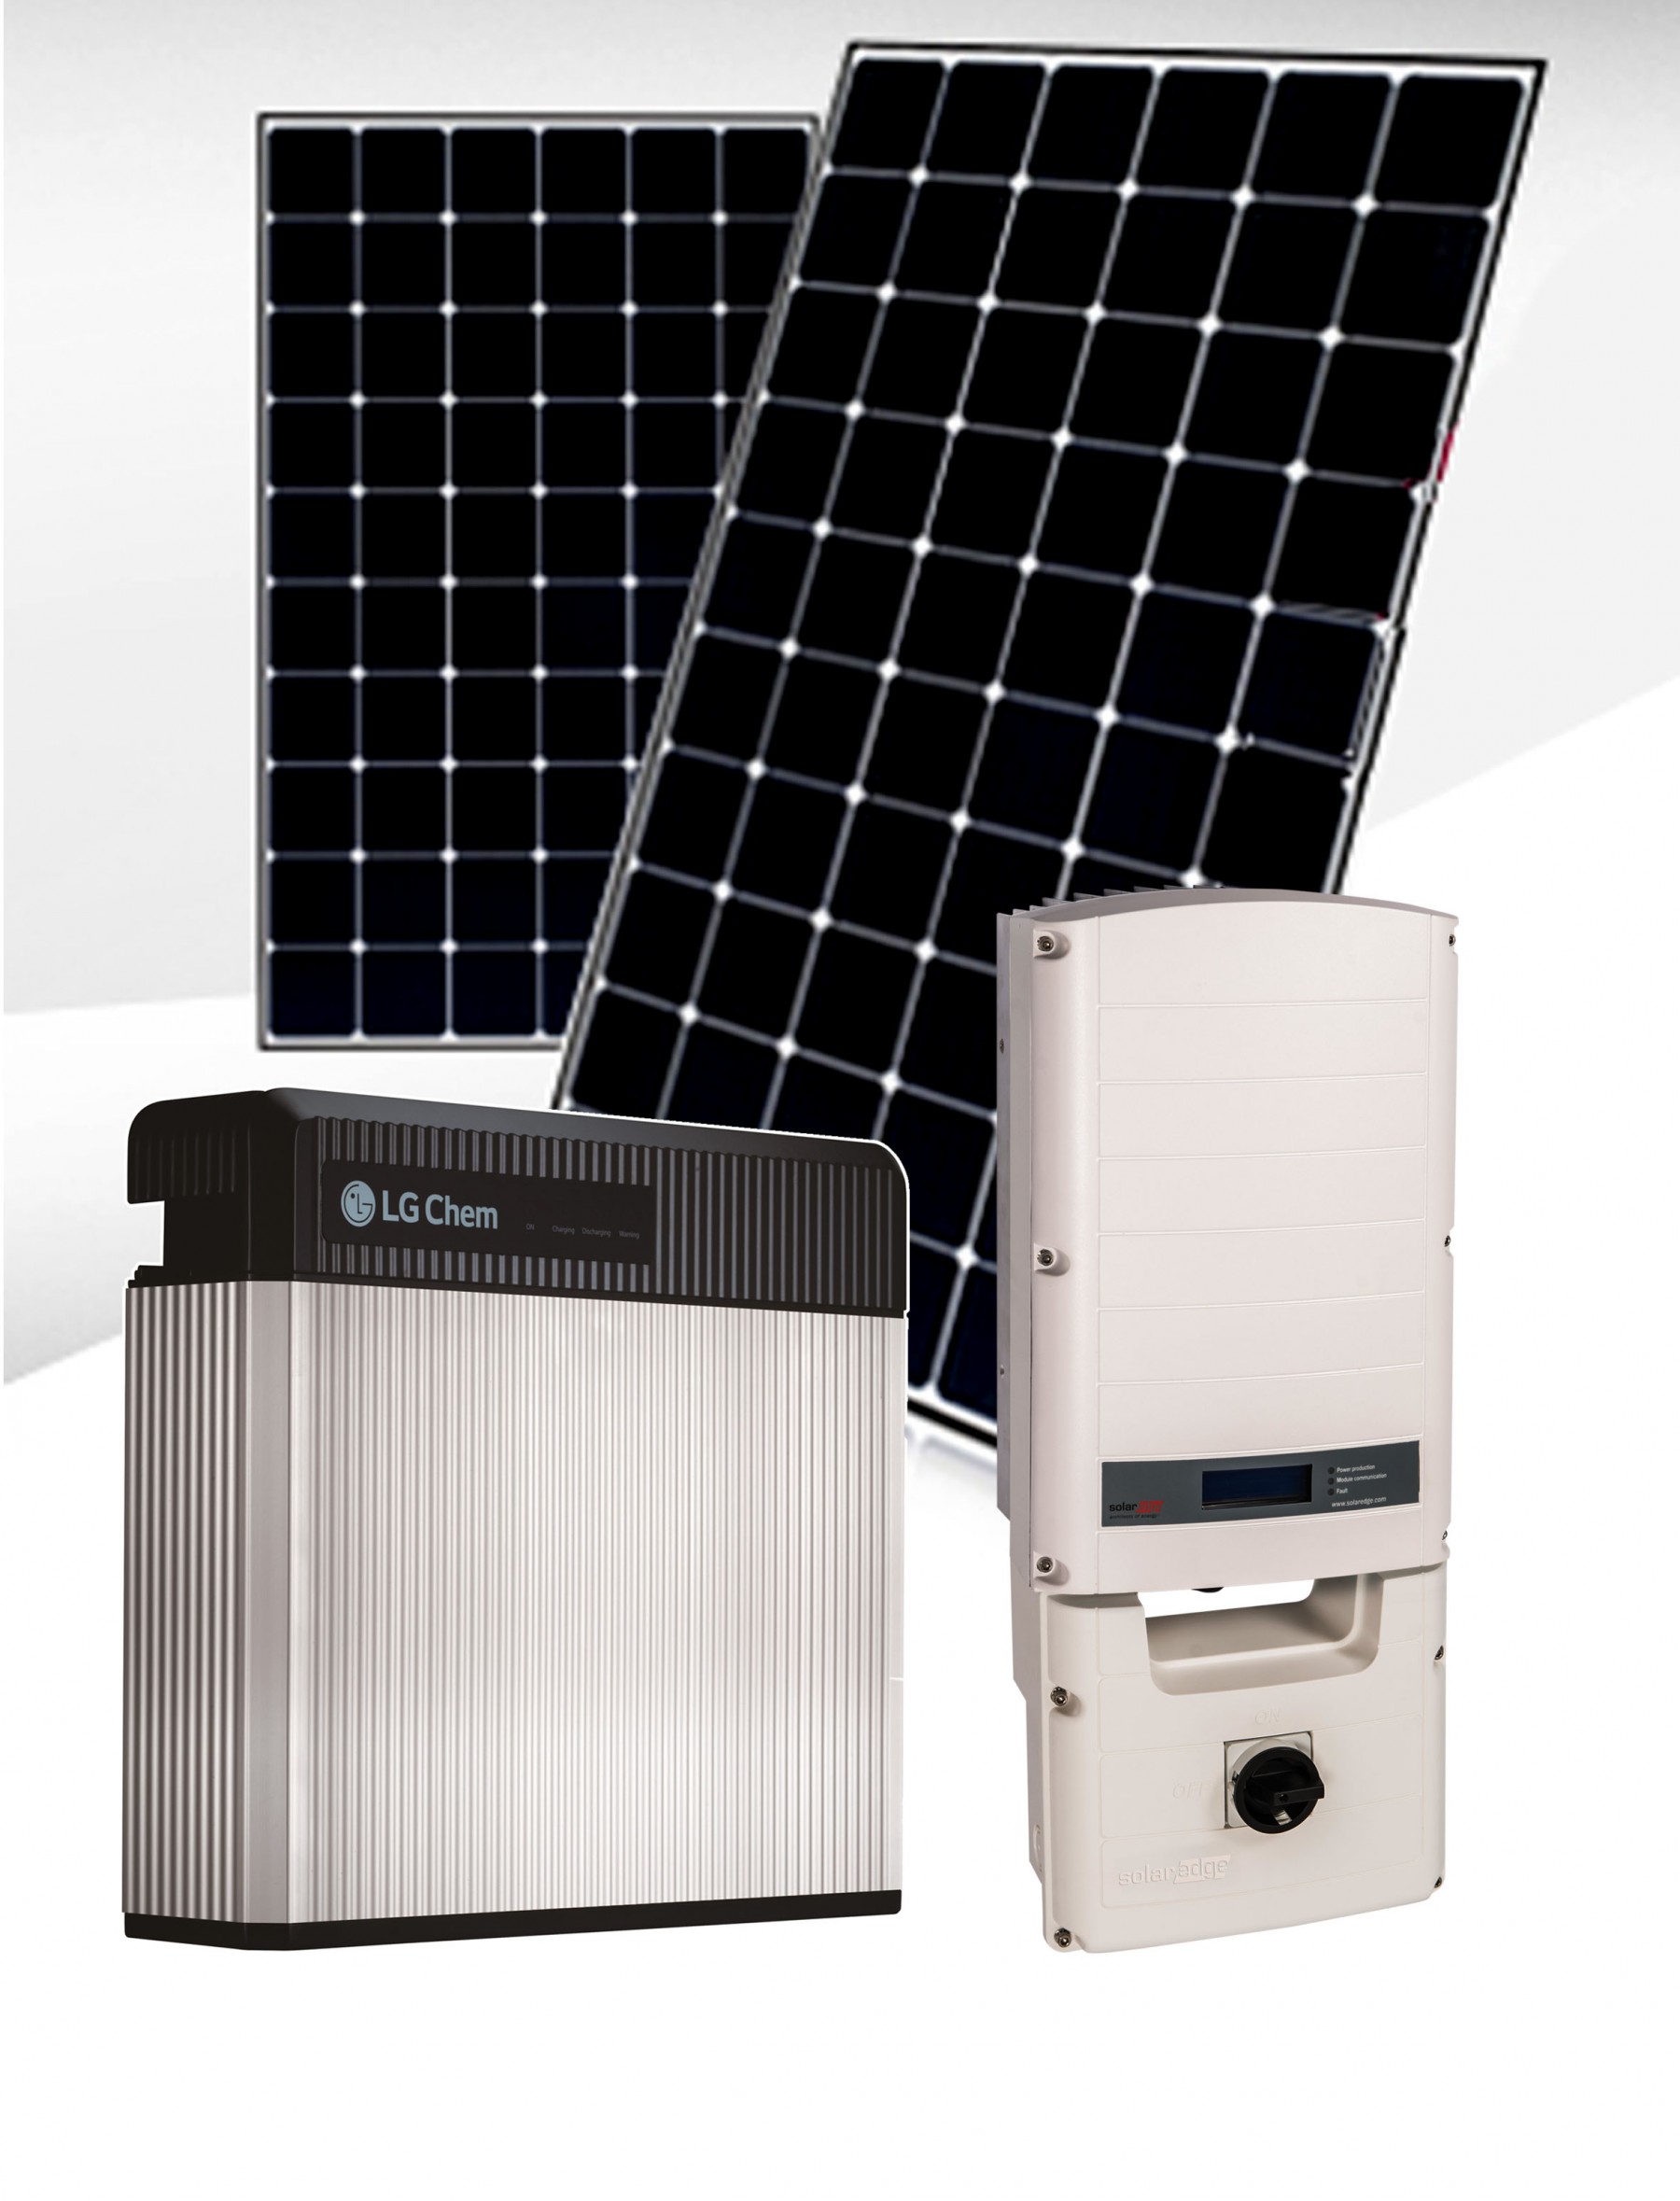 Lg-chem-battery-naked-solar-solaredge - Naked Solar